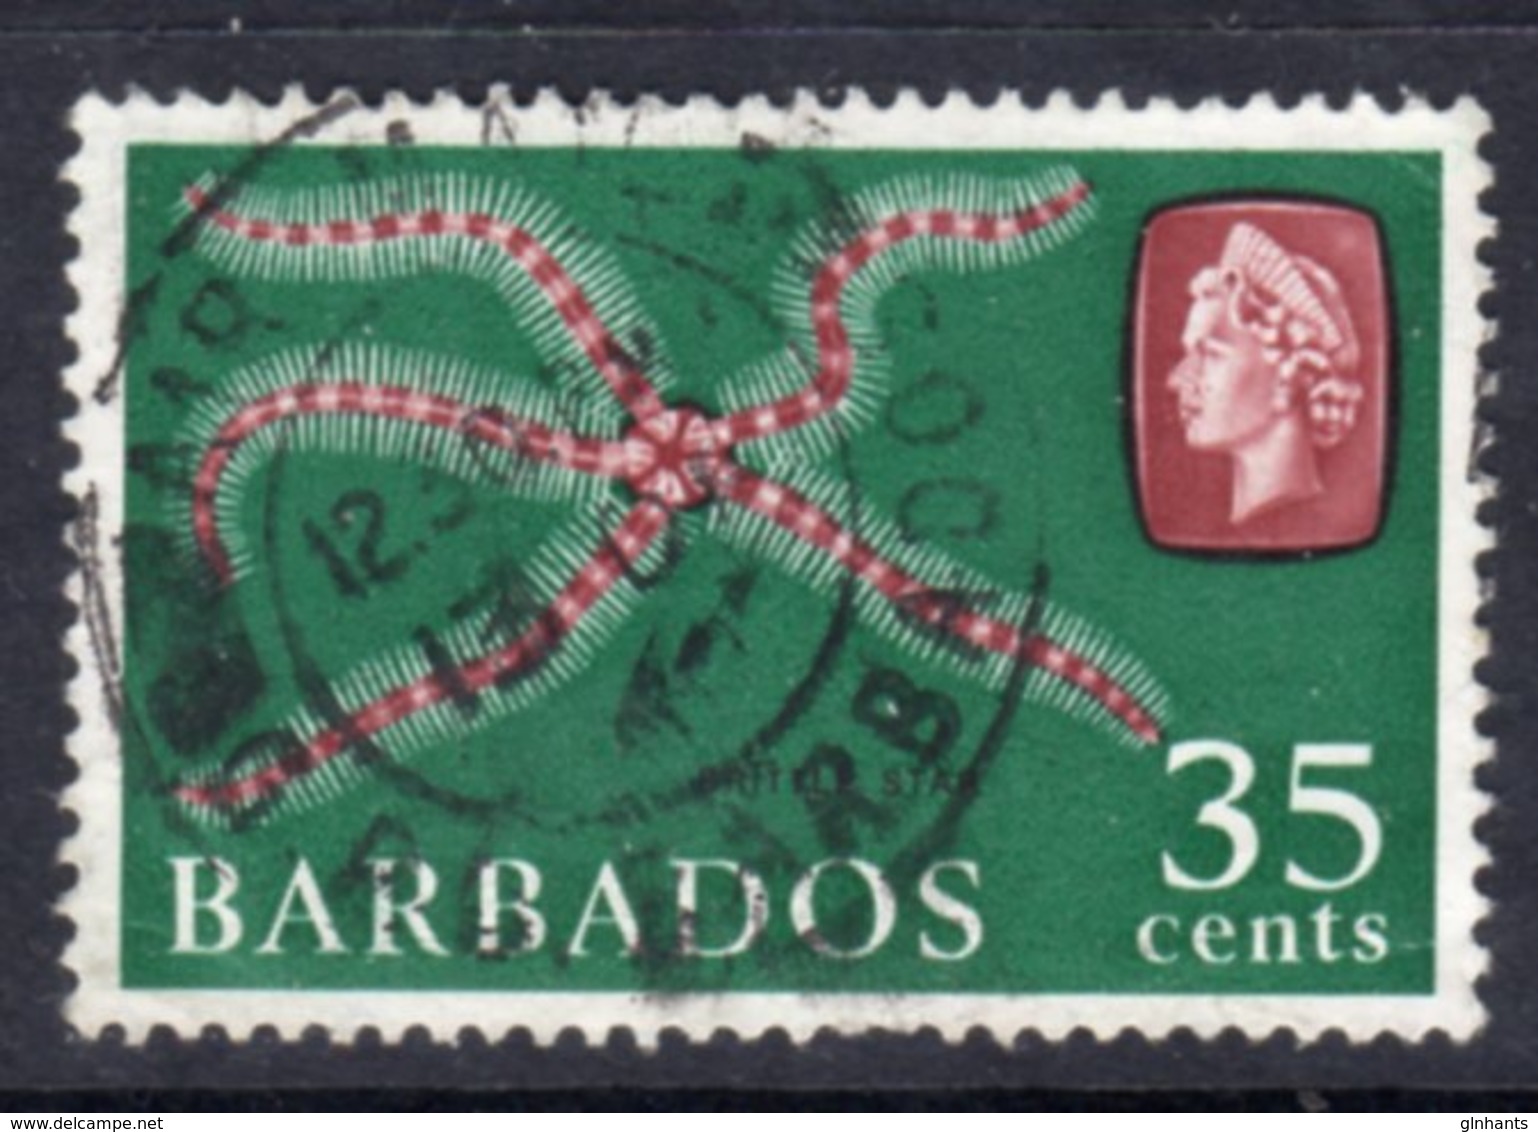 BARBADOS - 1966 35c DEFINITIVE STAMP WMK W12 SIDEWAYS REF C USED SG 352 - Barbados (...-1966)